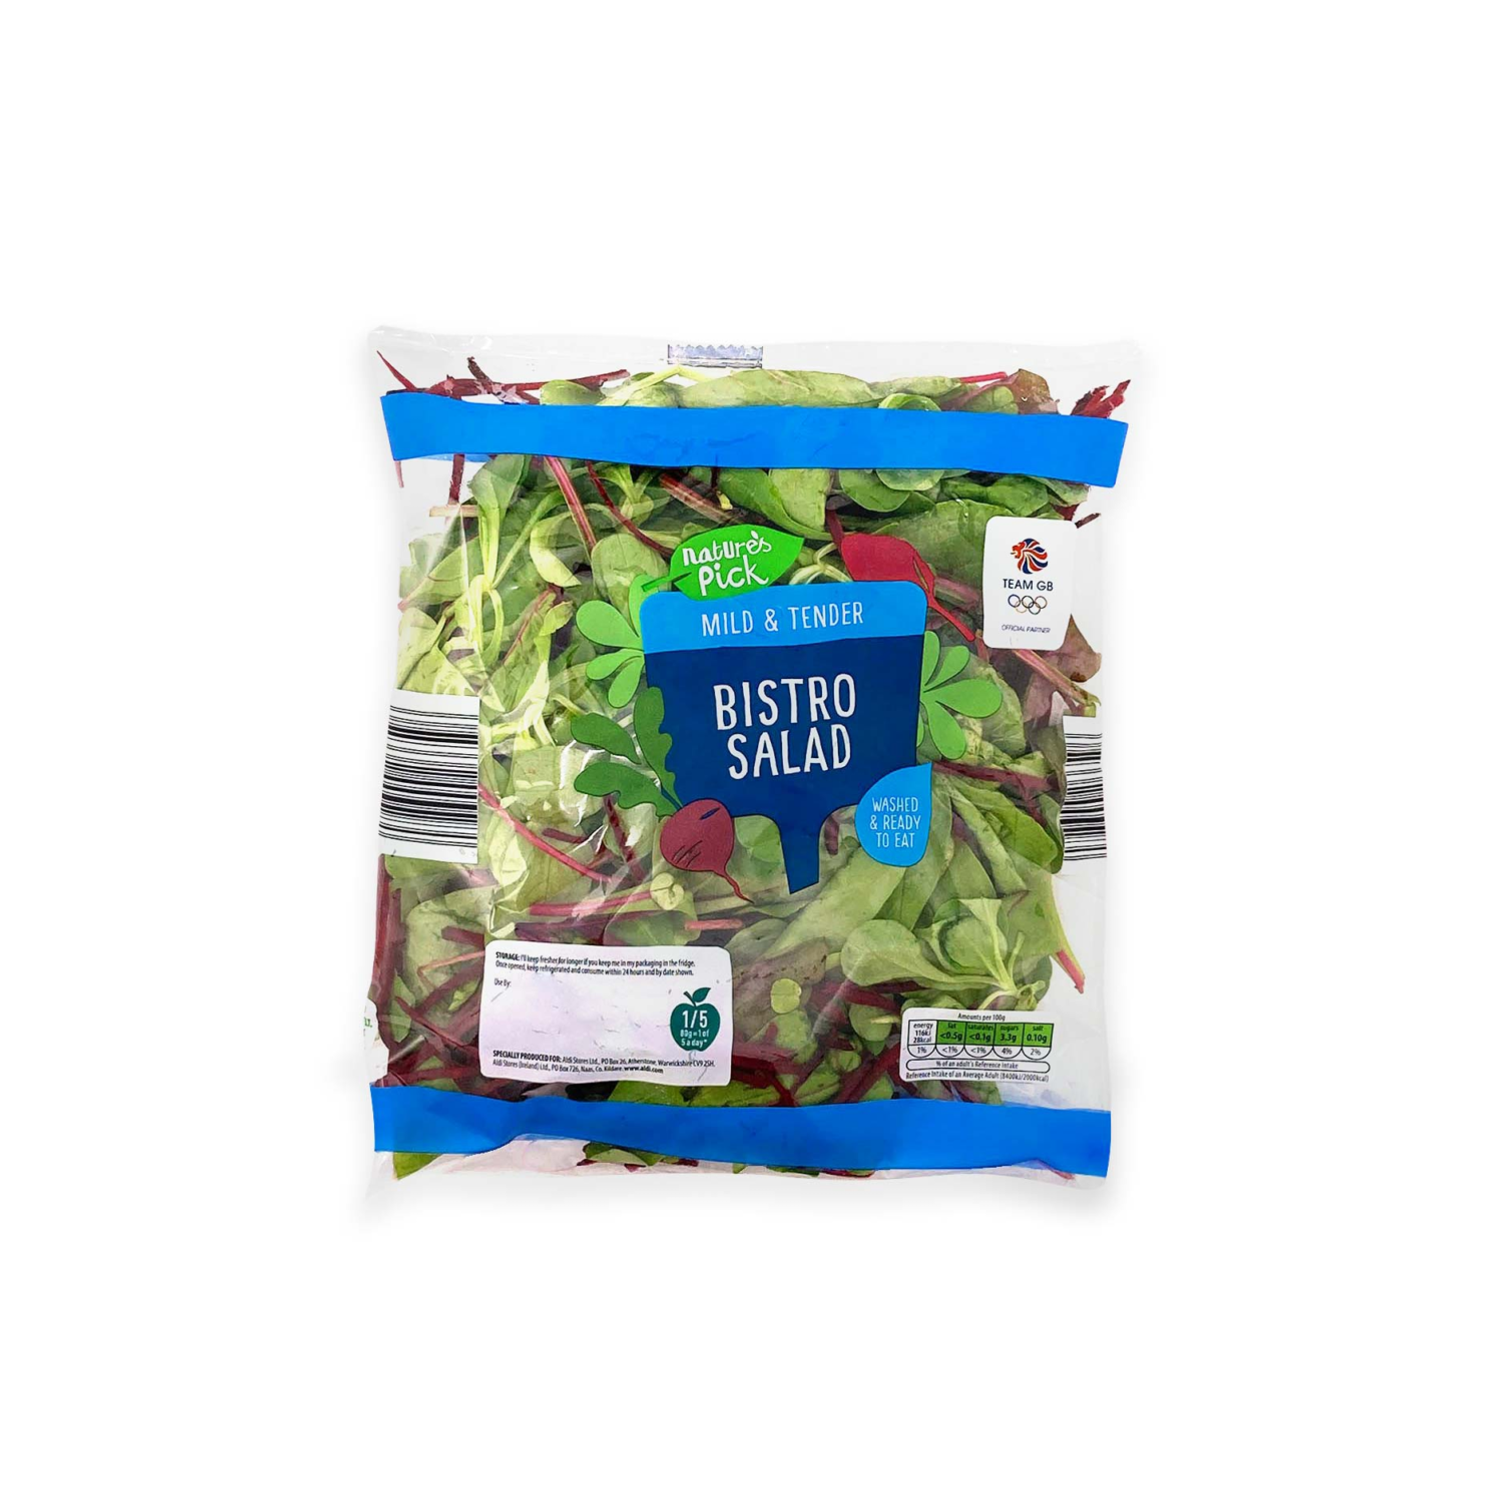 Nature's Pick Bistro Salad 160g | ALDI